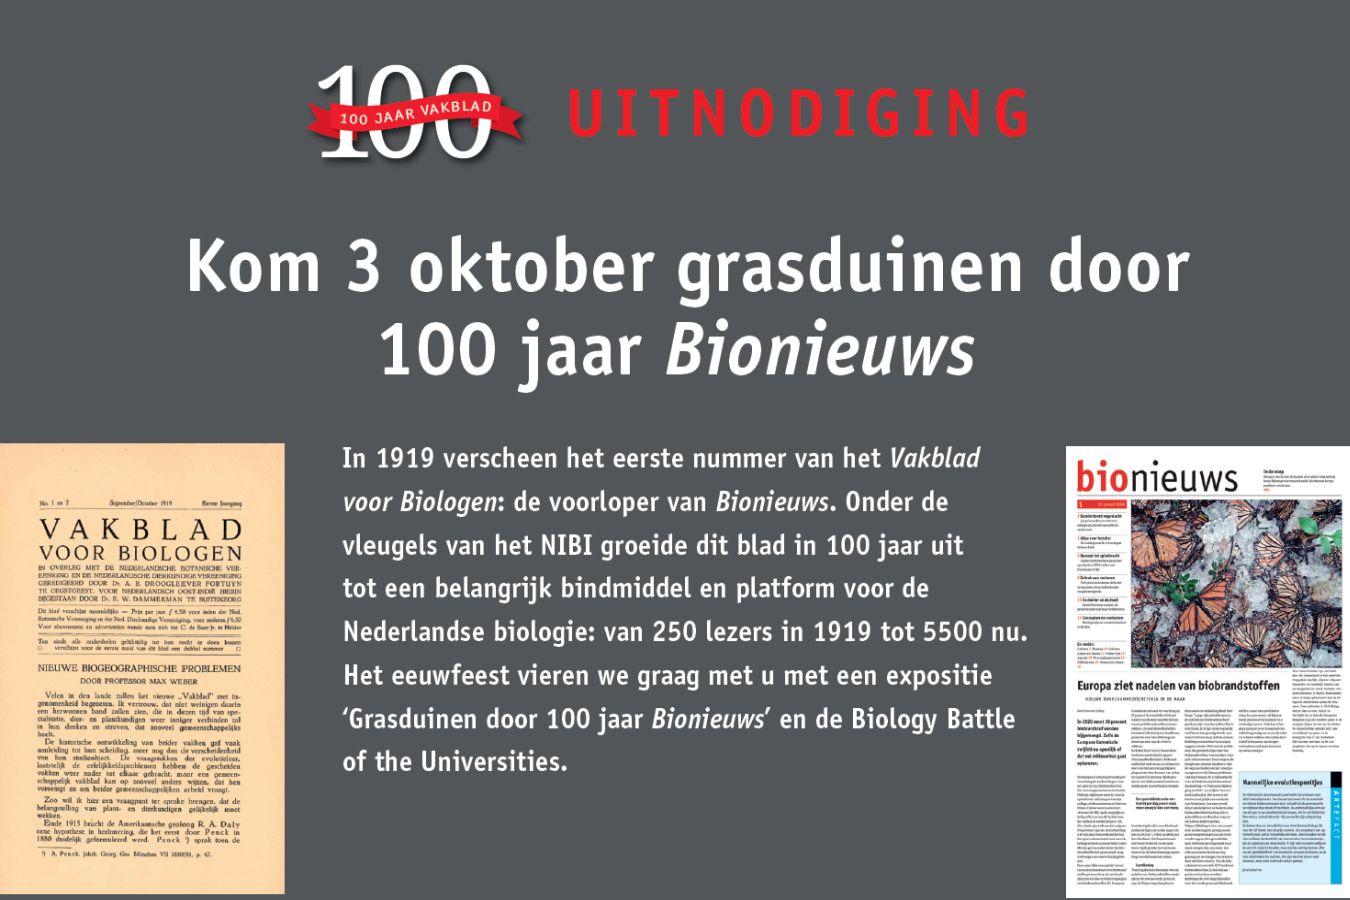 Jubileumfeest 100 jaar Vakblad voor Biologen